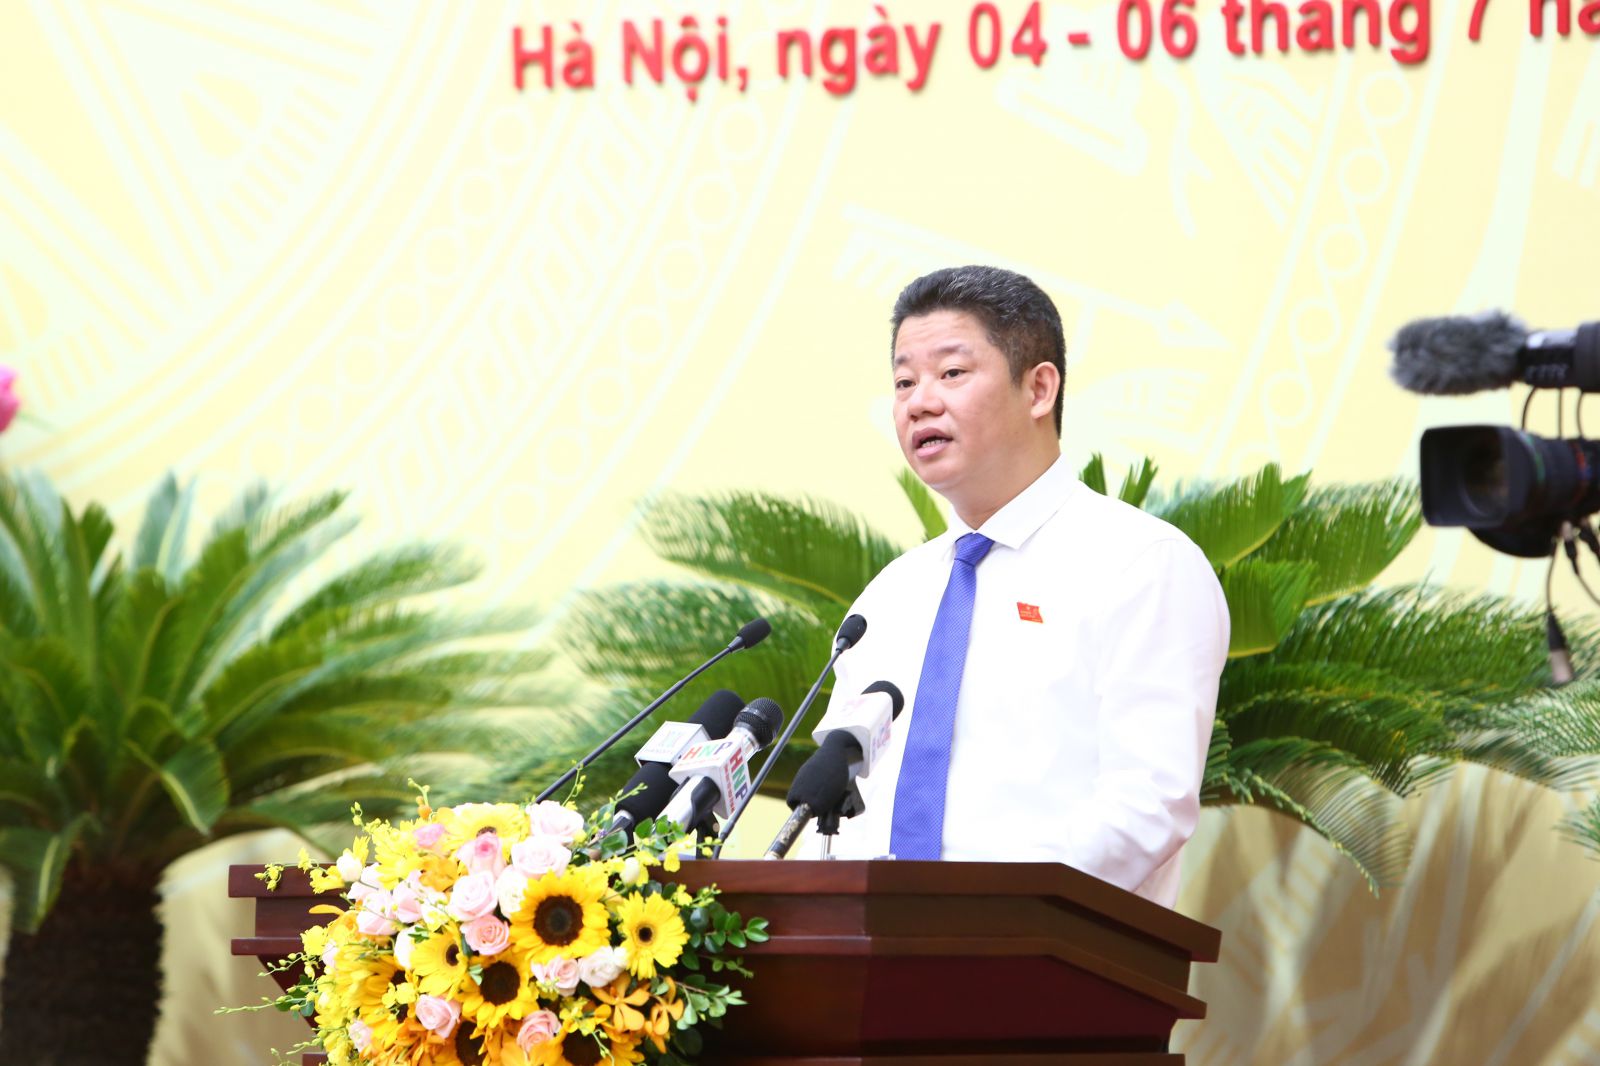 Ông Nguyễn Mạnh Quyền, Giám đốc Sở Kế hoạch và Đầu tư thành phố Hà Nội